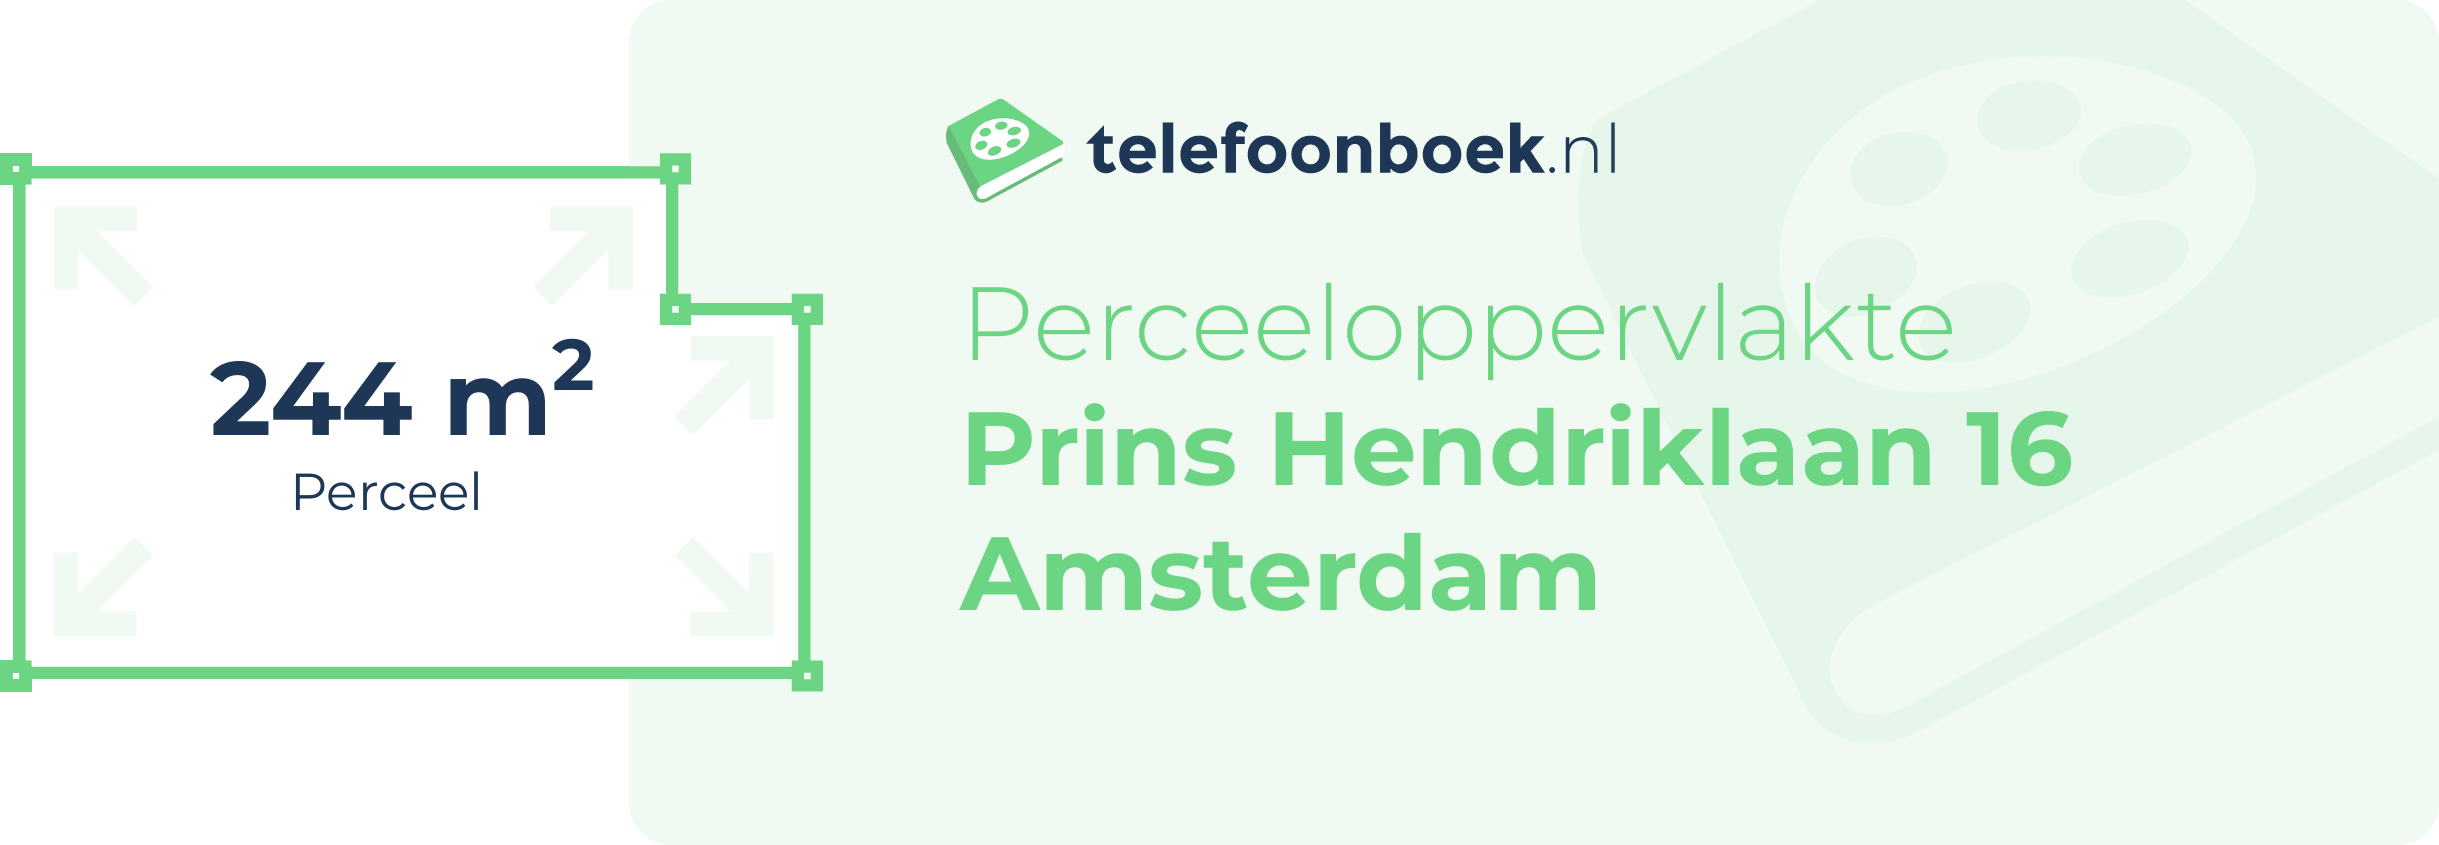 Perceeloppervlakte Prins Hendriklaan 16 Amsterdam